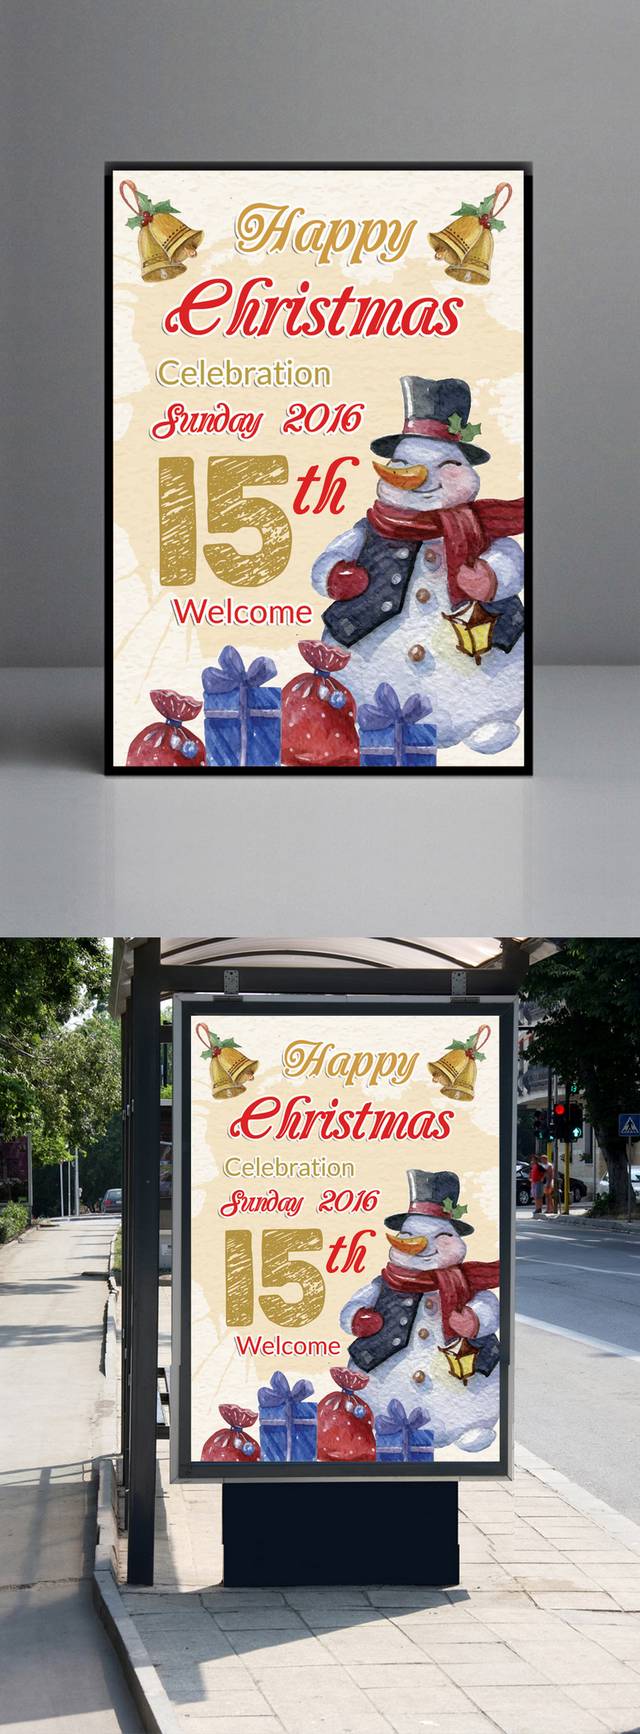 创意简约圣诞节海报设计模板